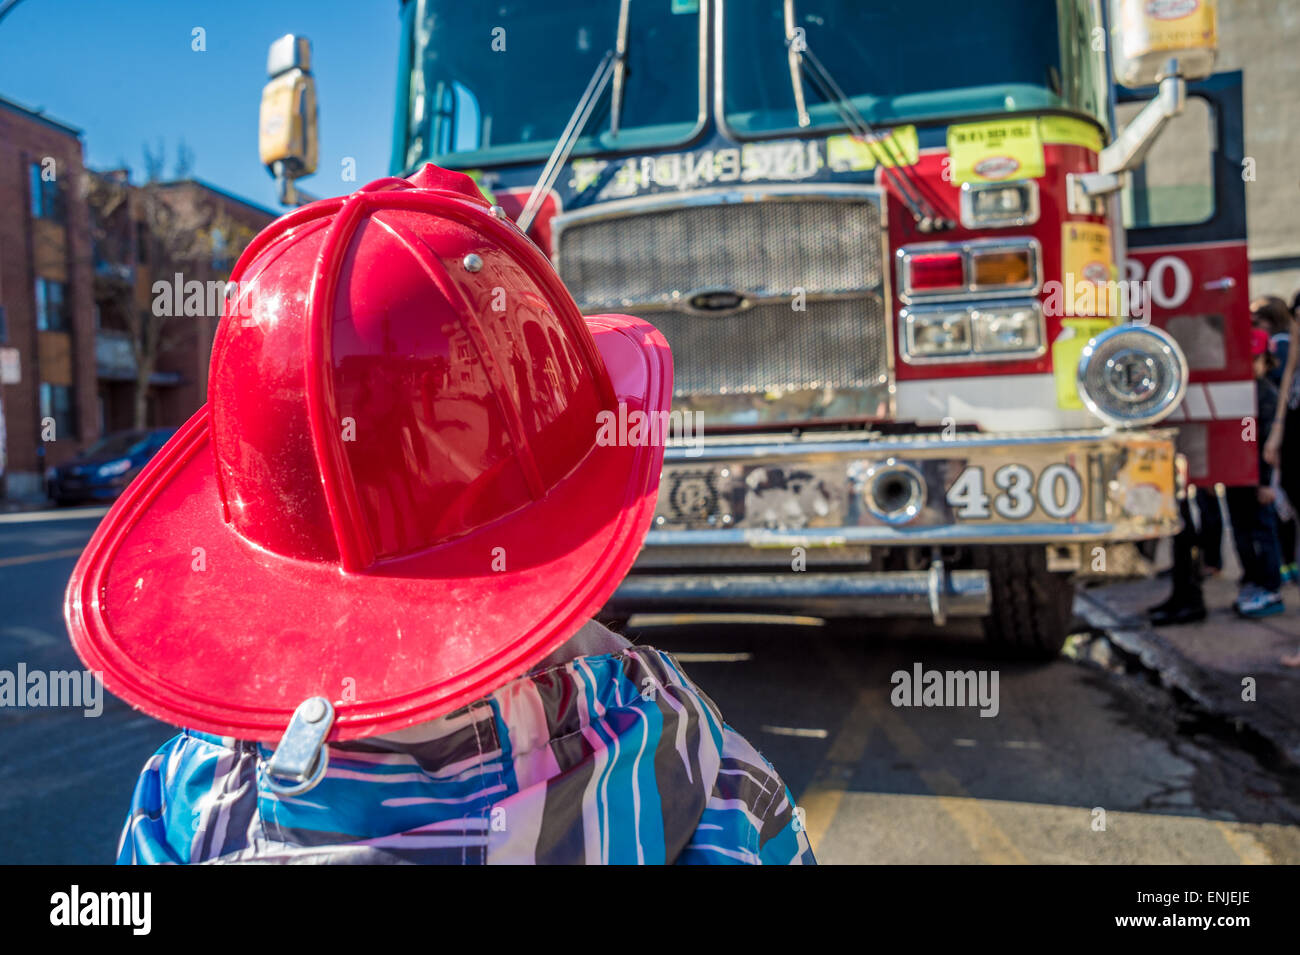 Enfant avec un casque de chasse-feu devant un camion d'incendie à Montréal, Canada Banque D'Images